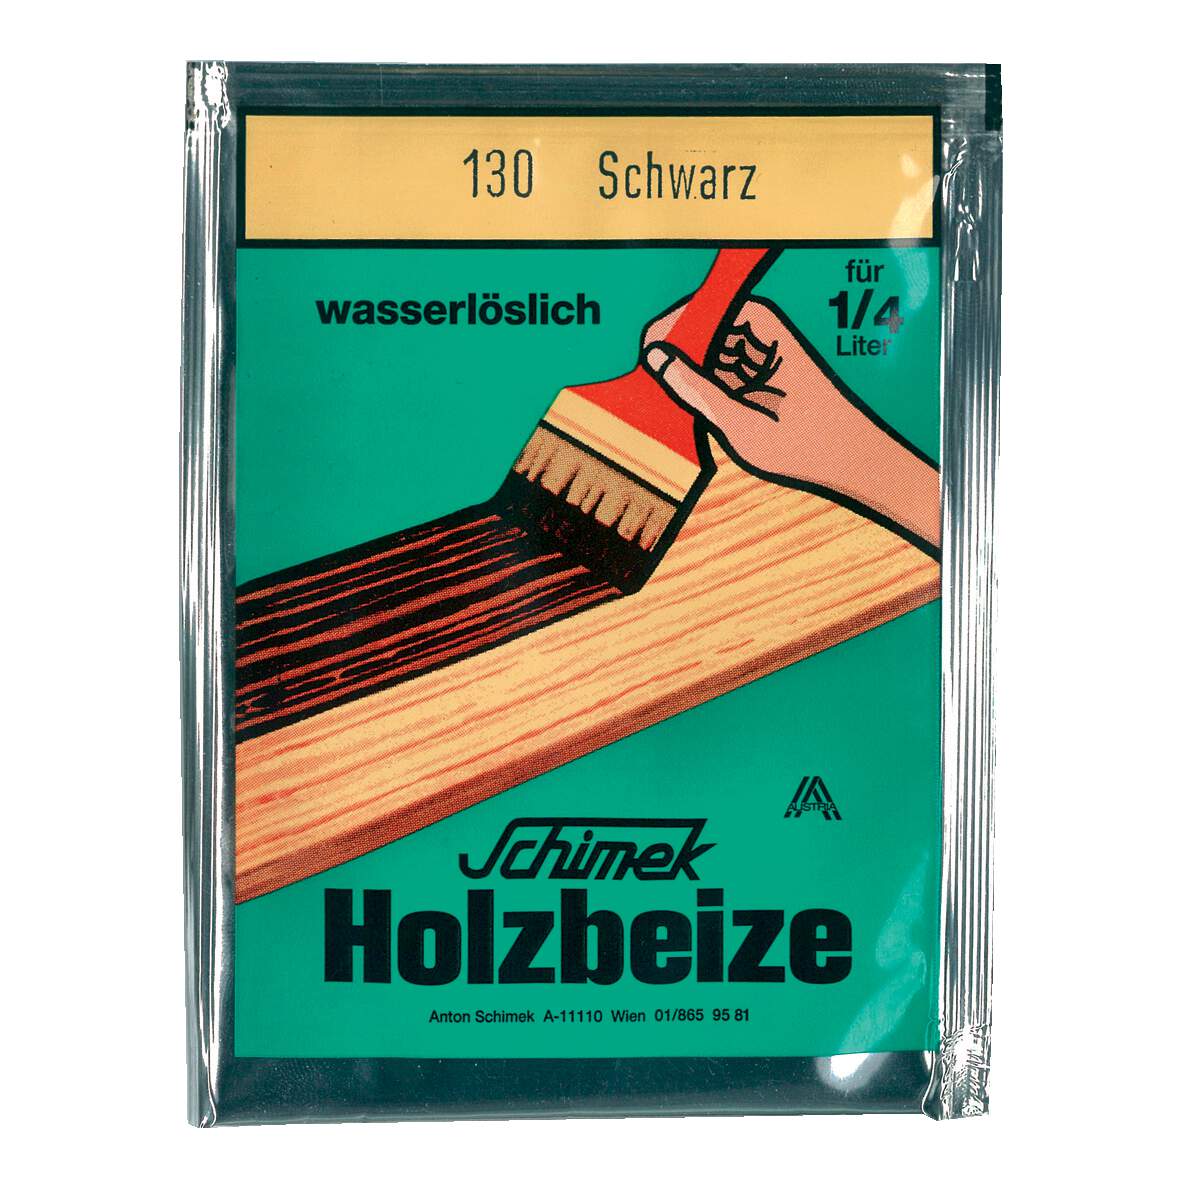 1216650 - Holzbeize wasserlöslich